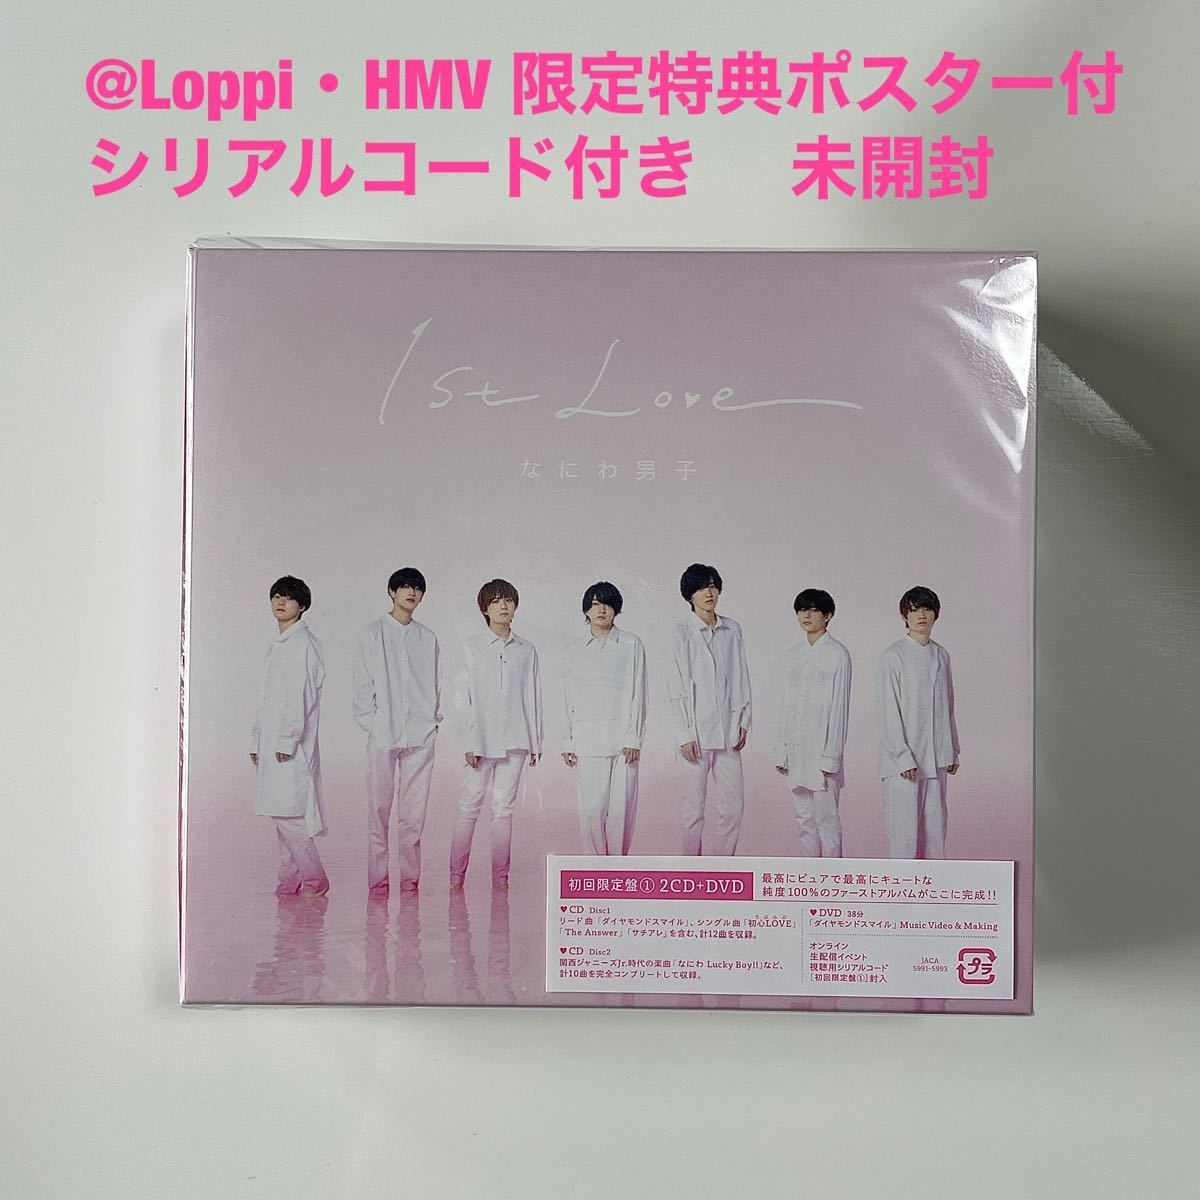 新作入荷!!】 なにわ男子1st Love 初回限定盤1 2CD+DVD CD 